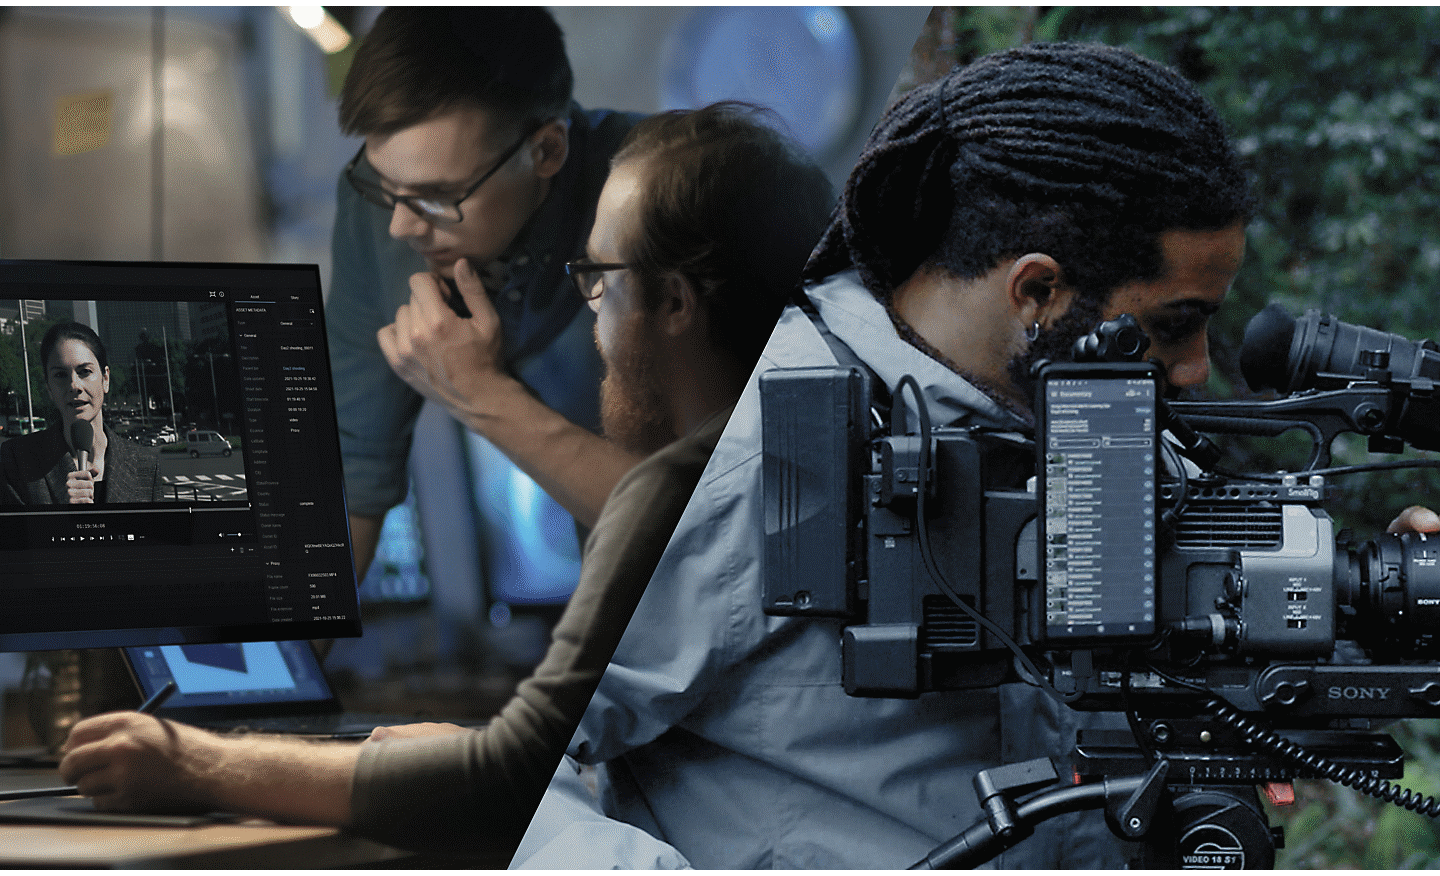 Üç kişilik bir film ekibi ormanlık alanda dururken görüntünün ortasındaki bir adam, Xperia akıllı telefon üzerinden buluta bağlı olan Sony sinema kamerasını ayarlıyor.